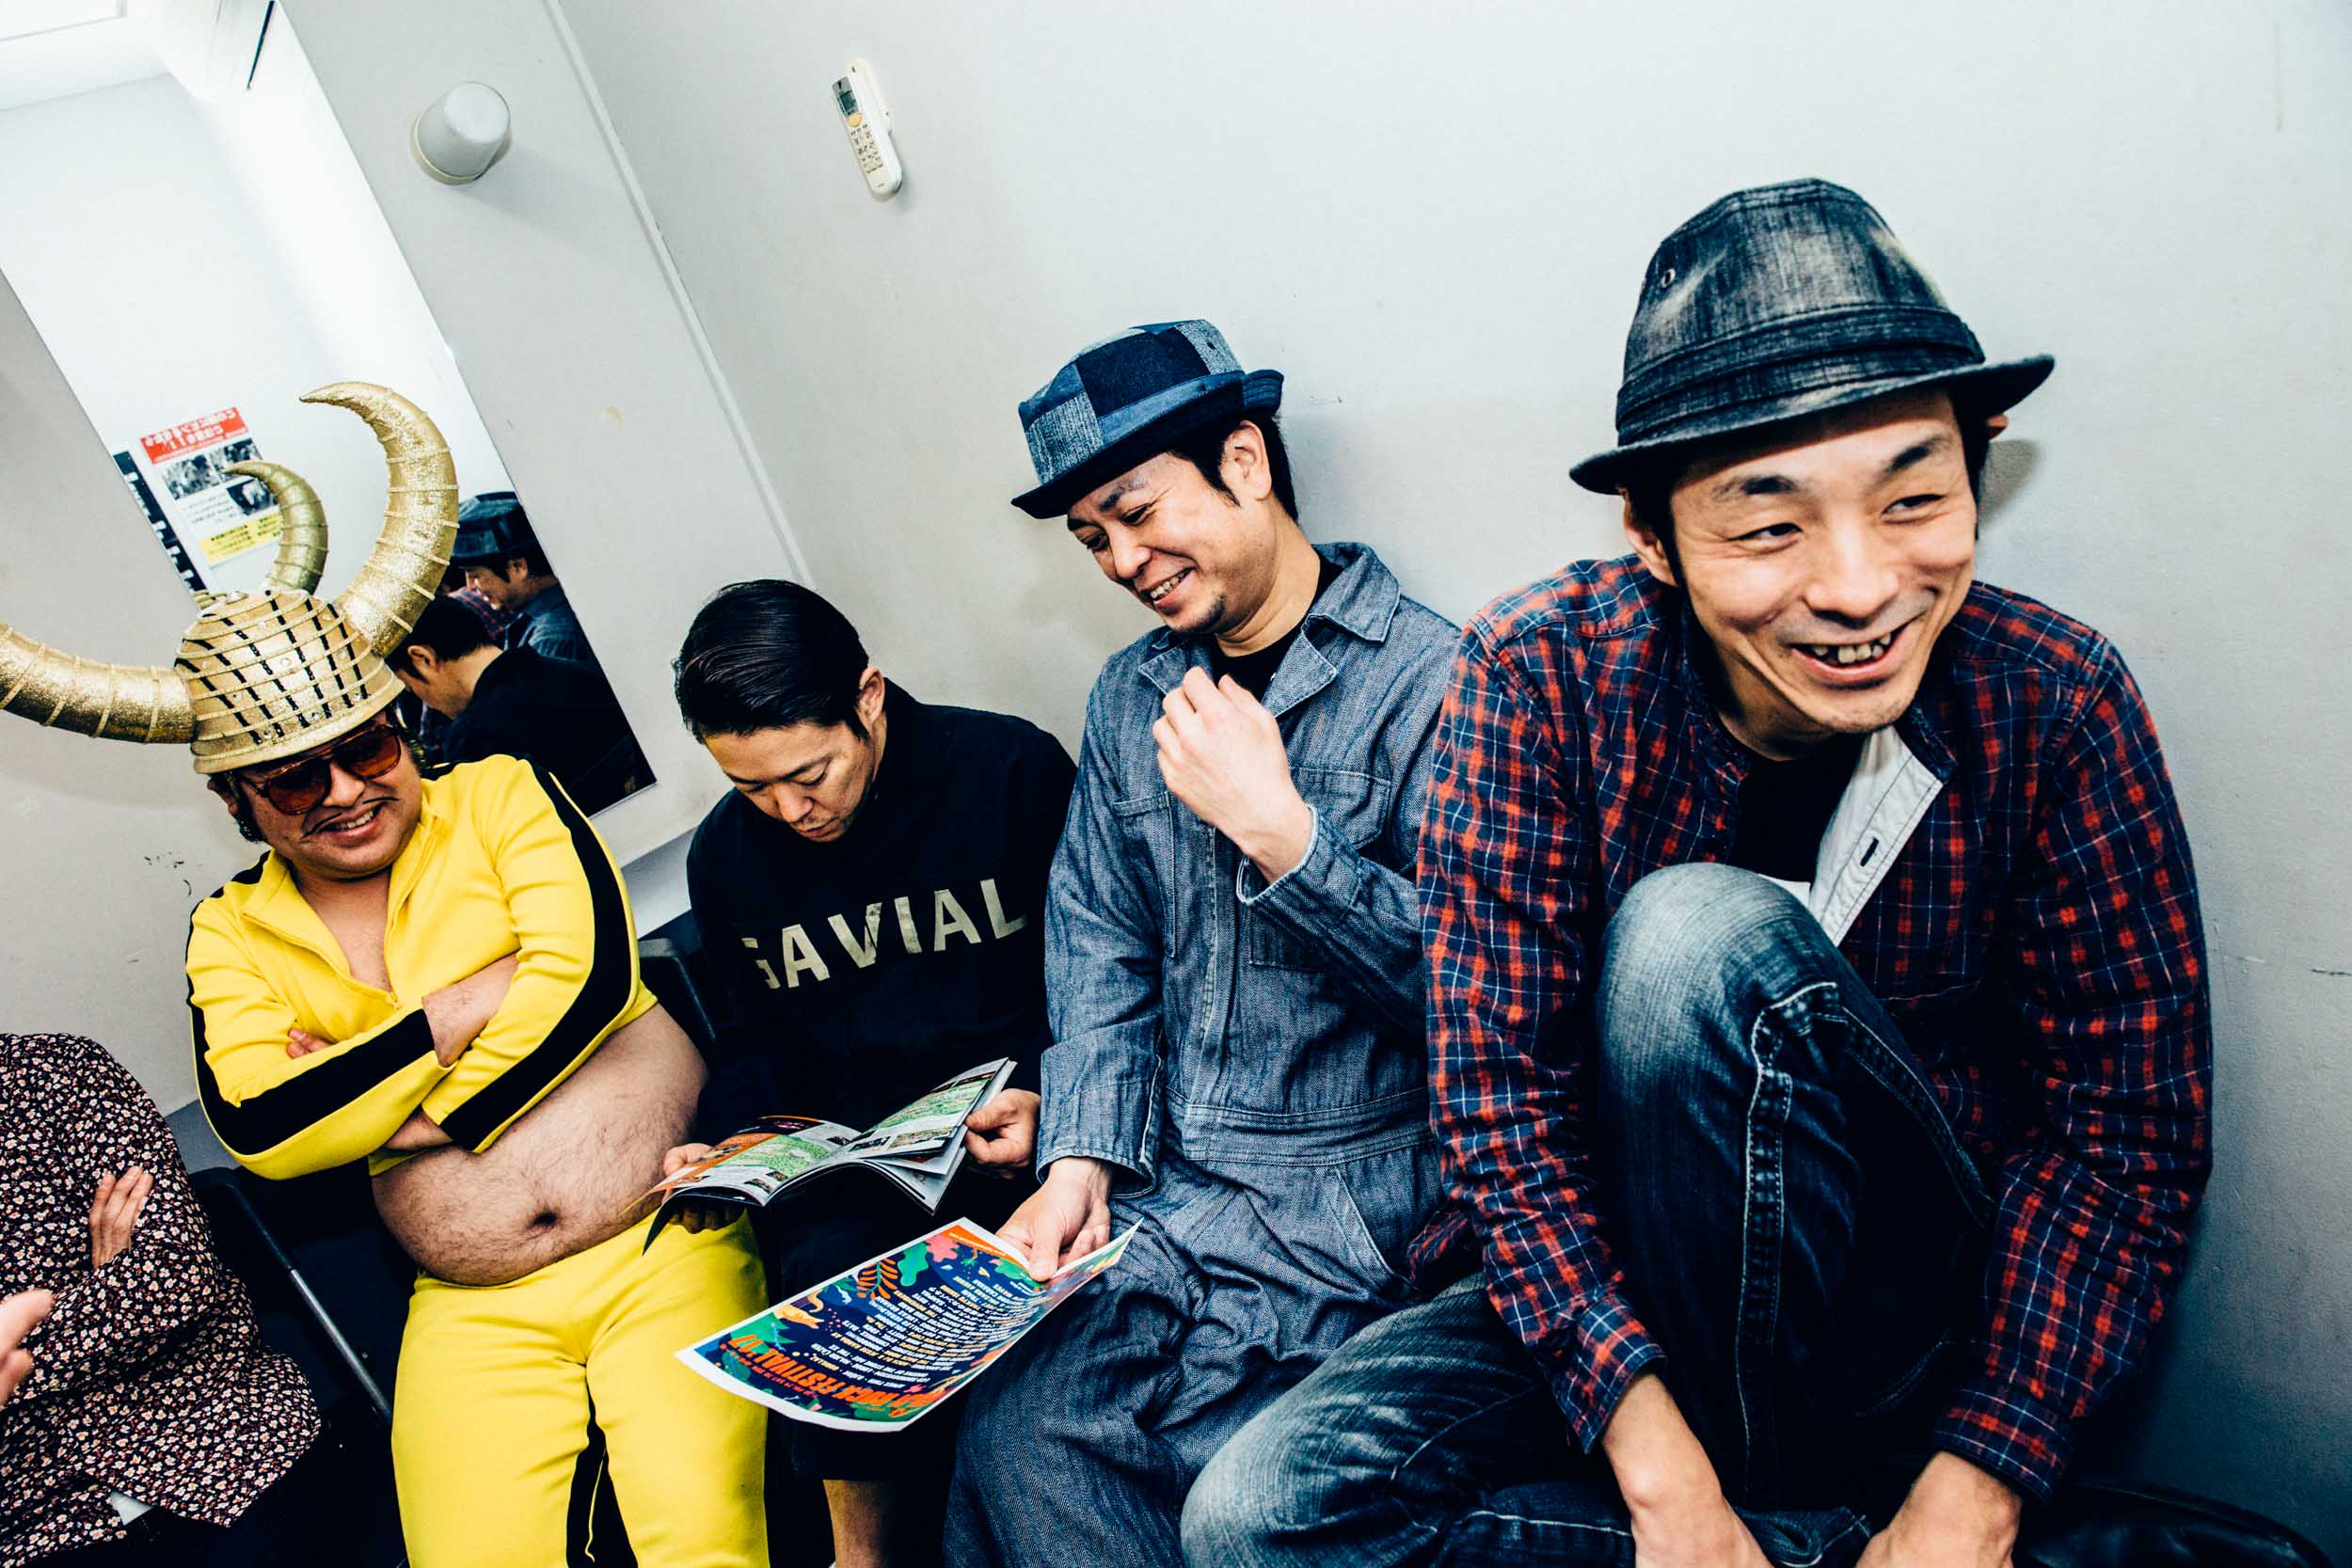 グループ魂 念願のフジロック初出演決定 メンバー全員にインタビュー 富士祭電子瓦版 Fuji Rock Festival Electronic News